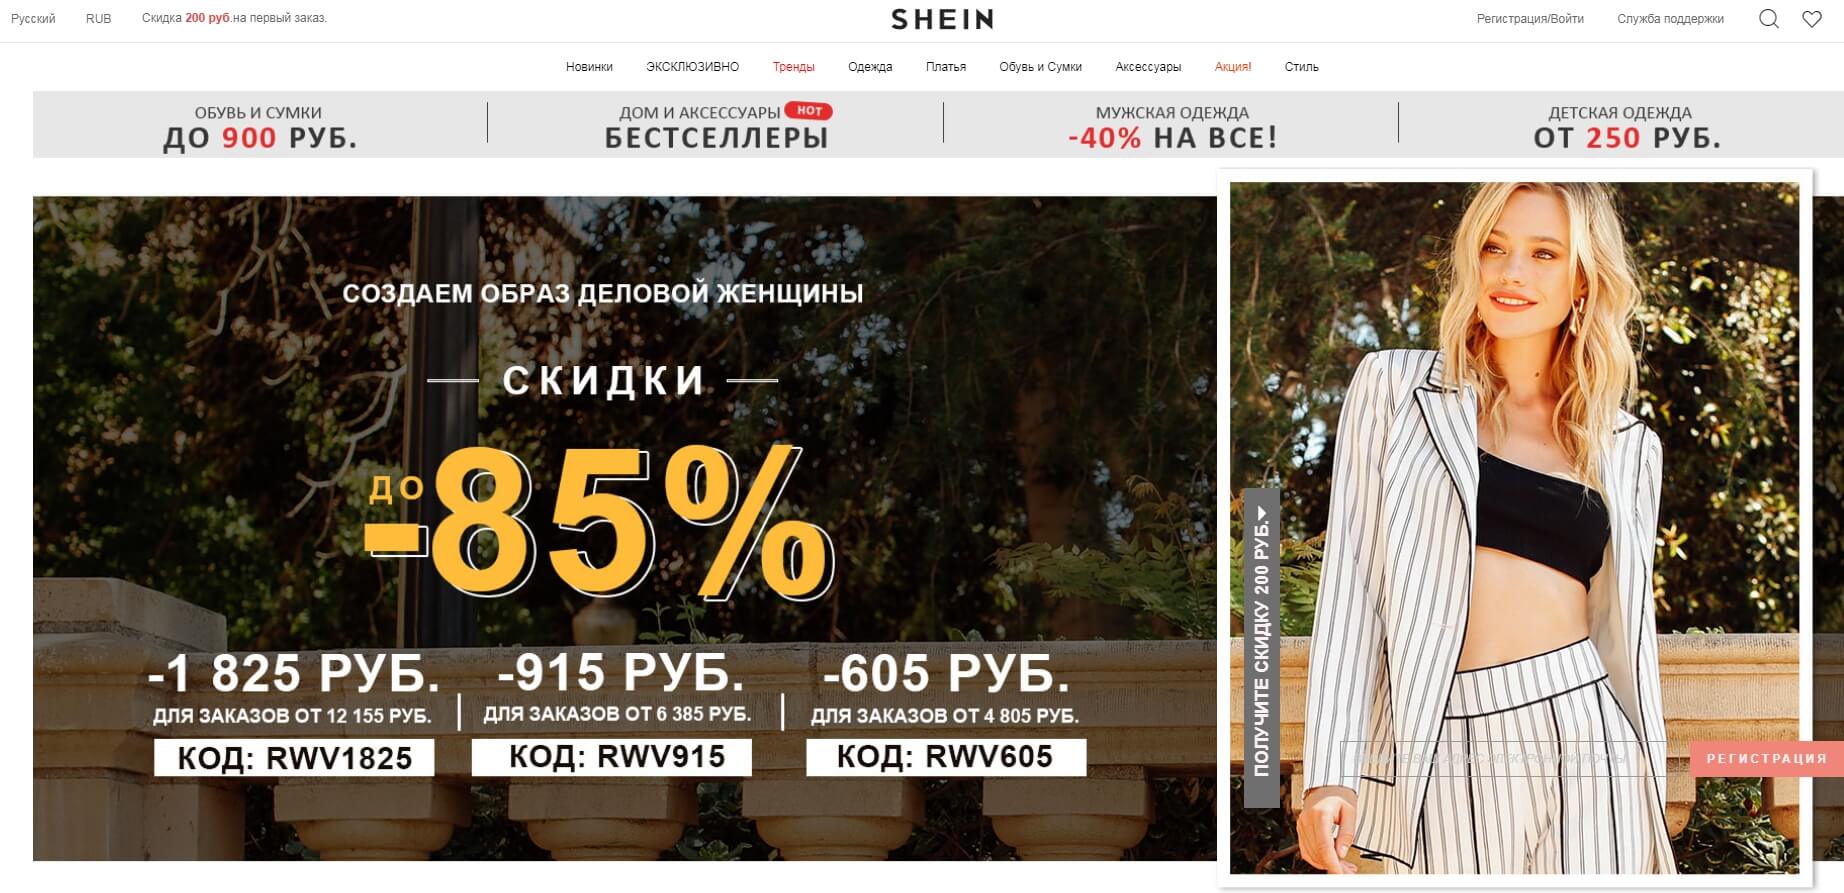 Shein Мода Одежда Интернет Магазин Леди